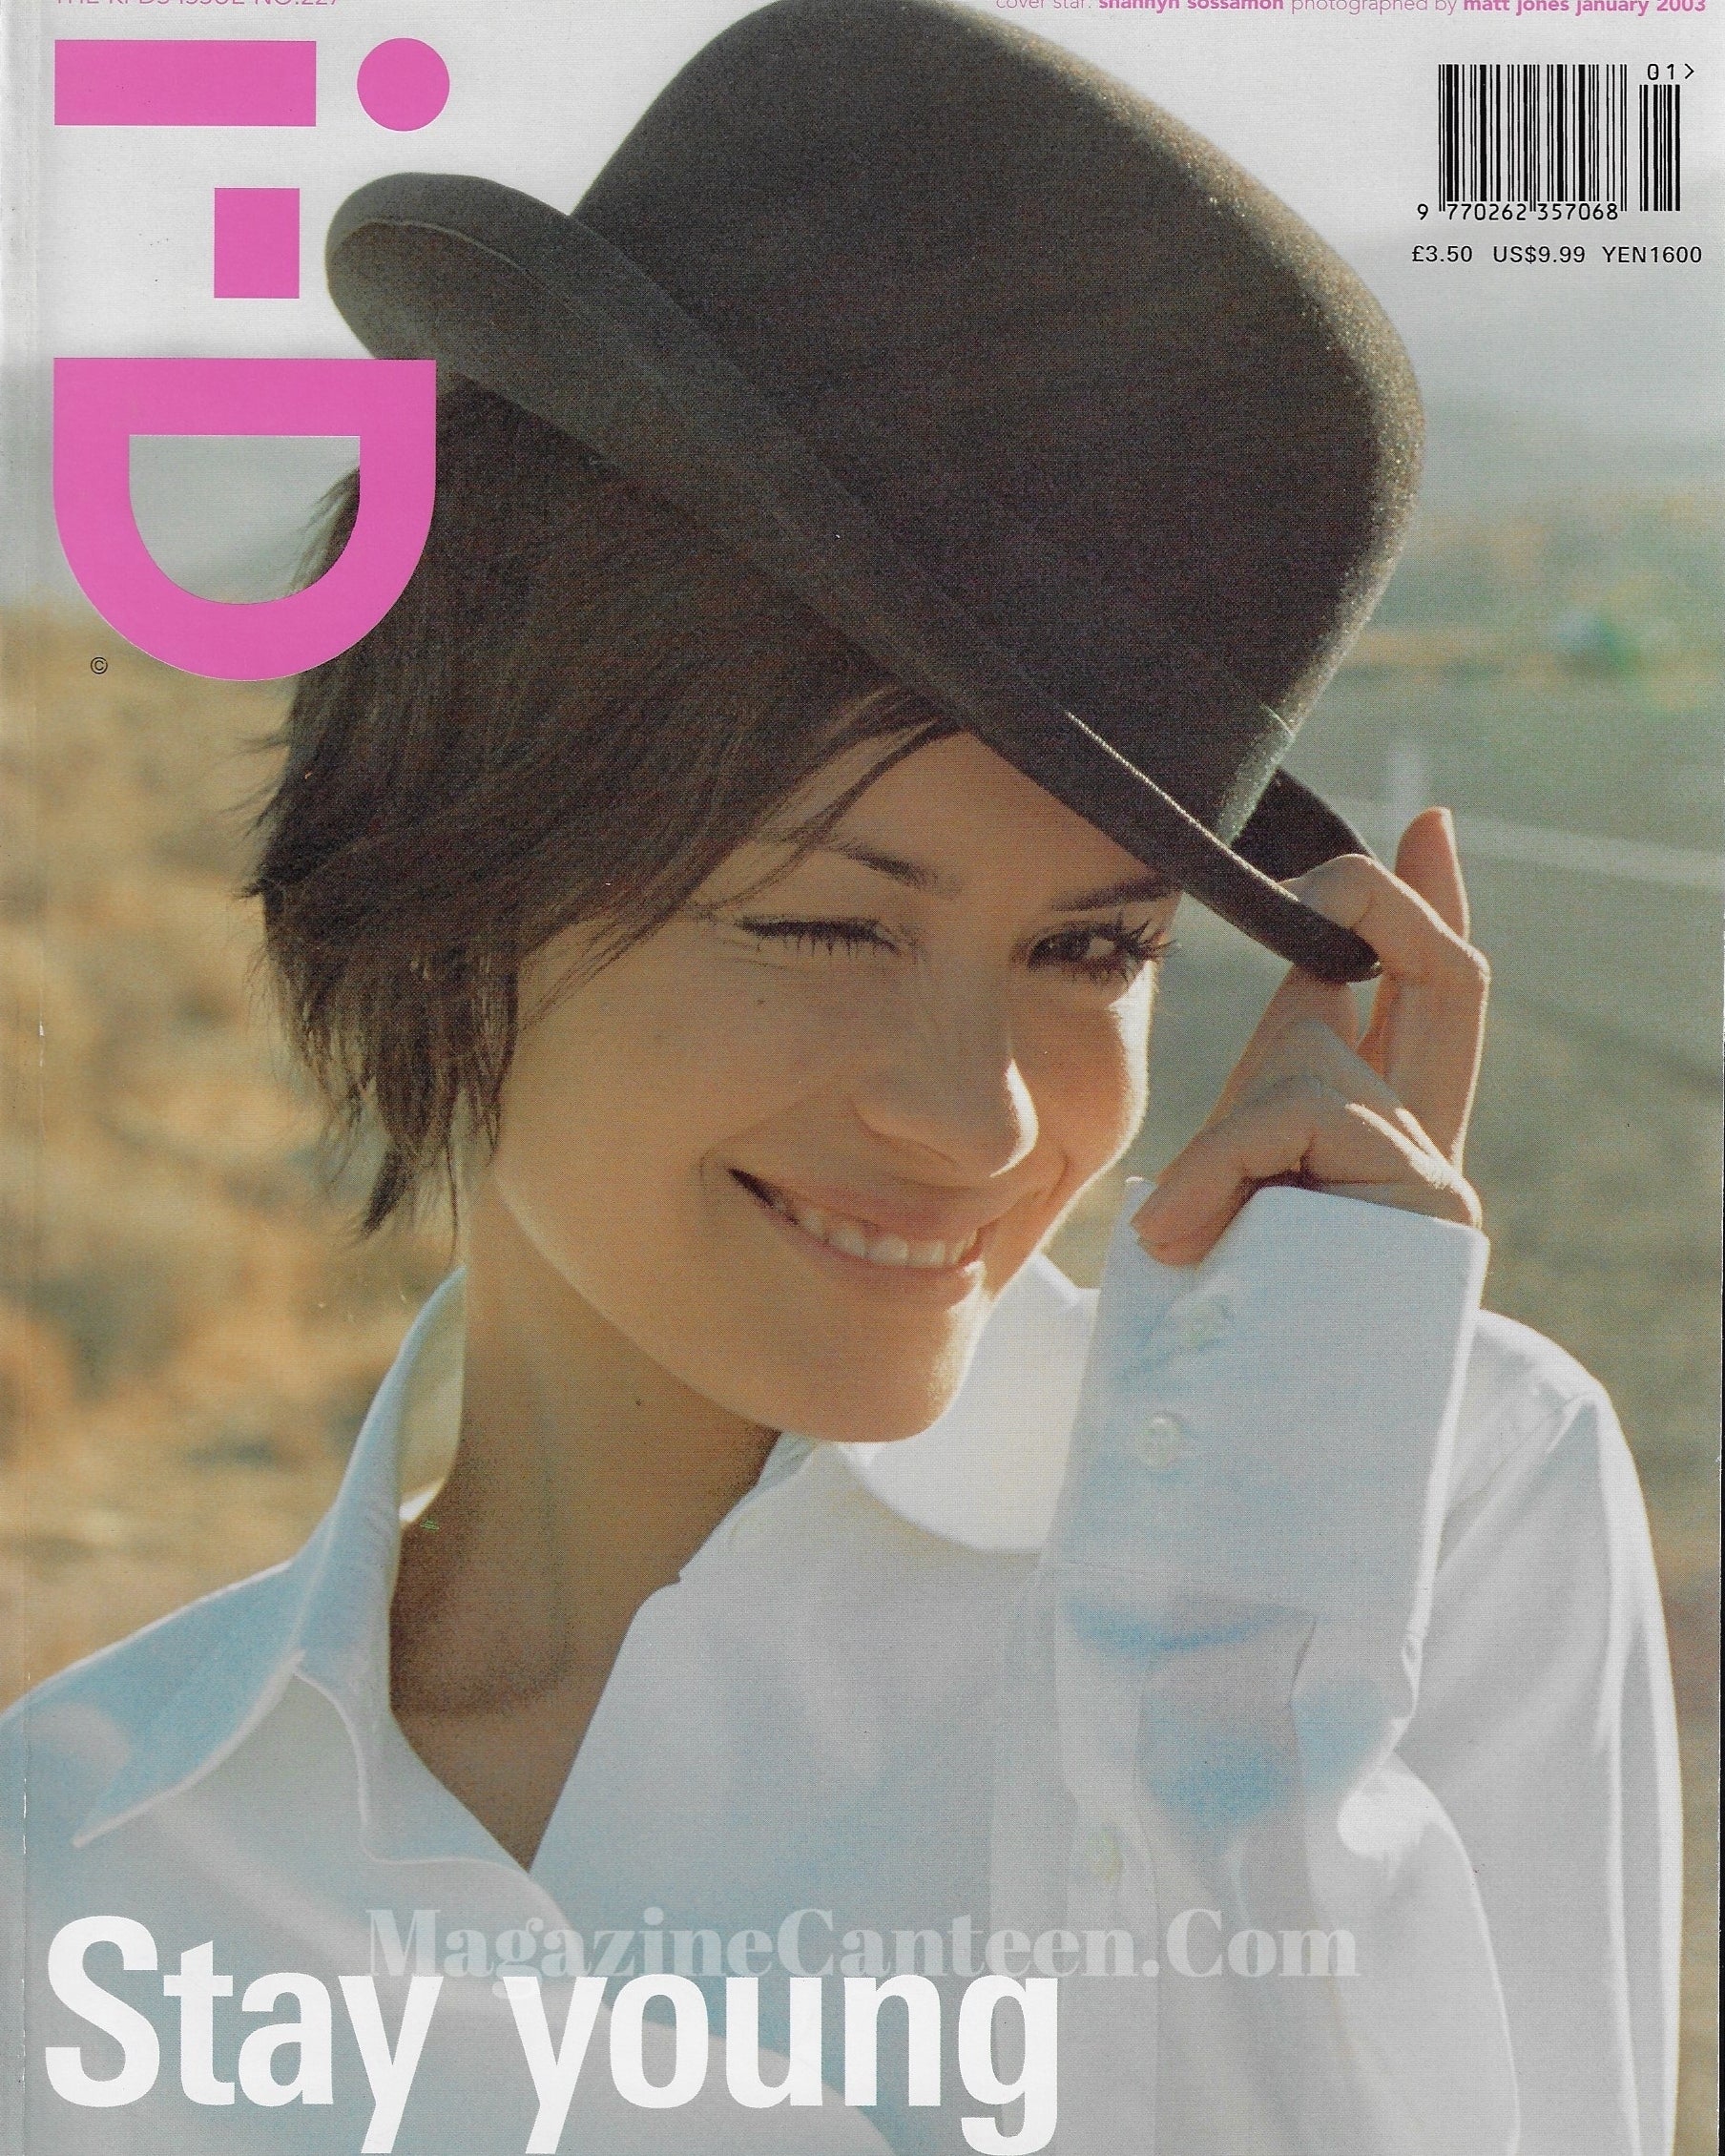 I-D Magazine 227 - Shannyn Sossamon 2003